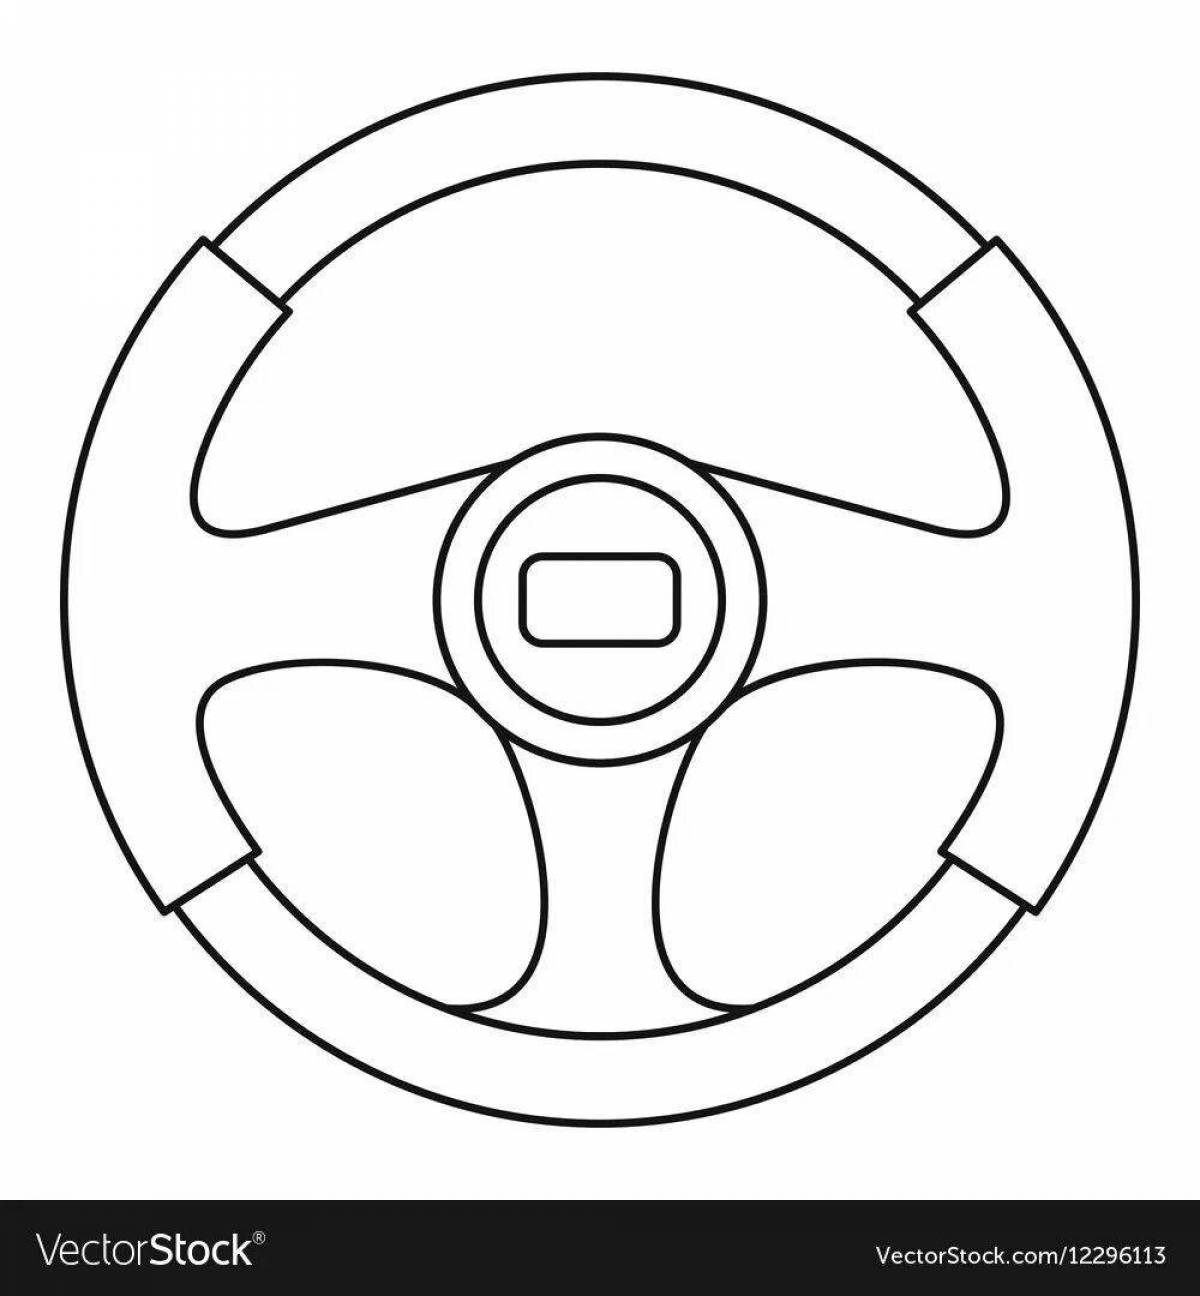 Steering wheel for children car #8